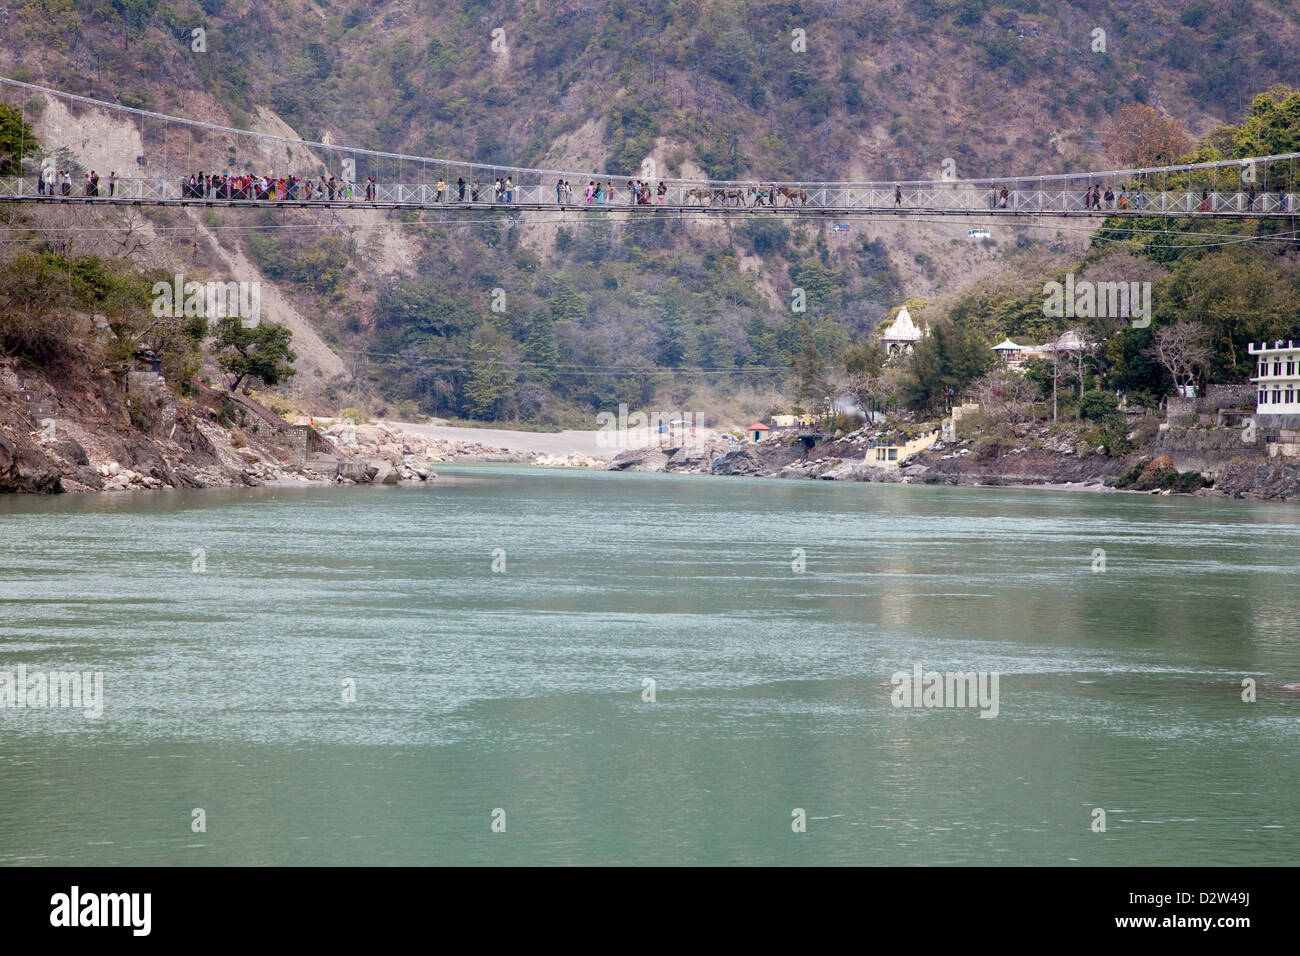 Indien, Rishikesh. Hängebrücke verbindet die beiden Ufer. Menschen und Maultiere überqueren. Stockfoto